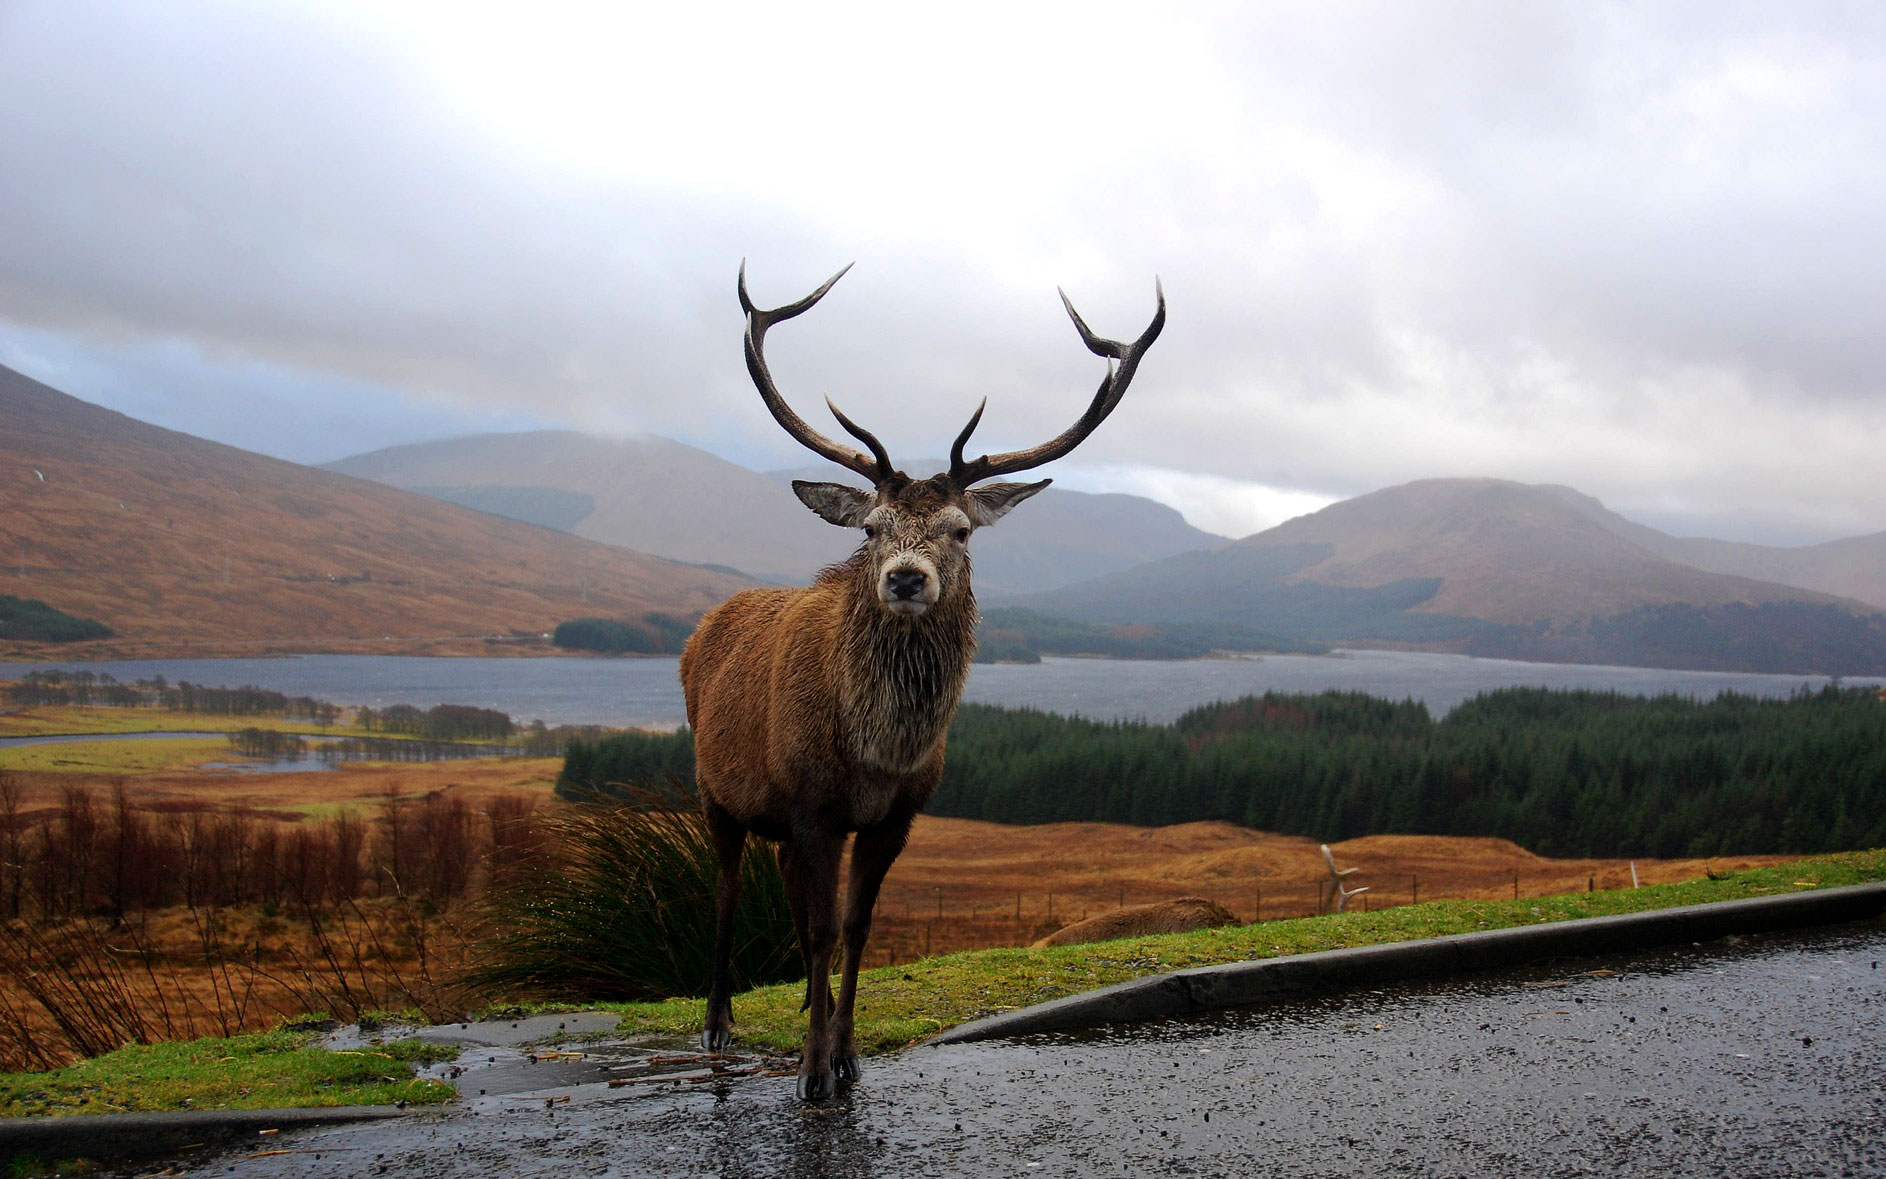 Stag deer in Scottish Highlands road